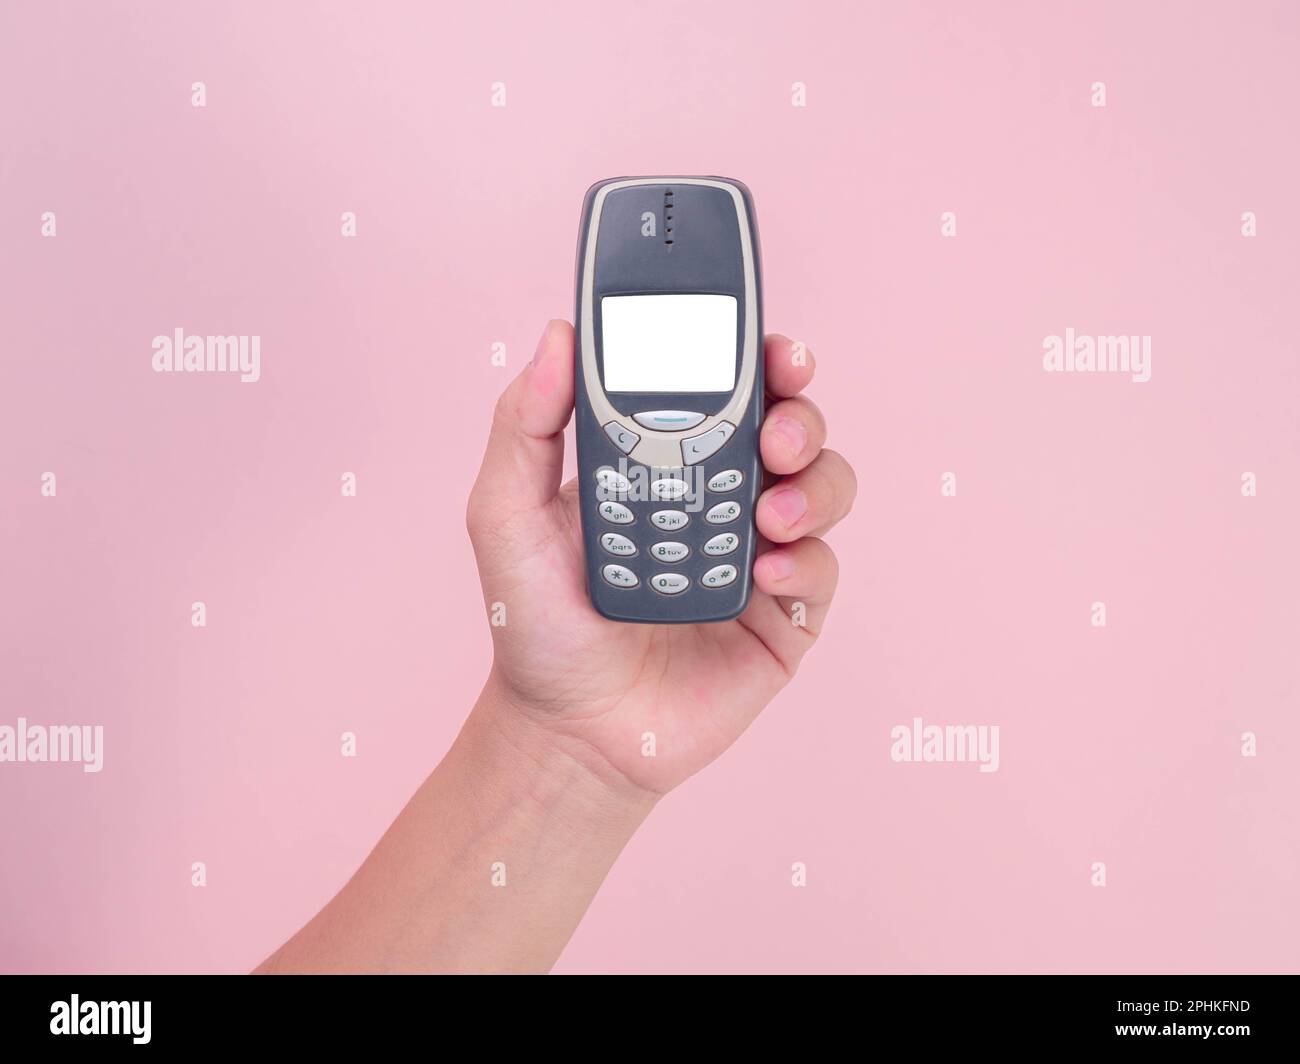 Primo piano mano che tiene il telefono cellulare Nokia 3310 isolato su sfondo rosa. Mano femmina che tiene vecchio telefono usato Nokia 3310. Foto Stock